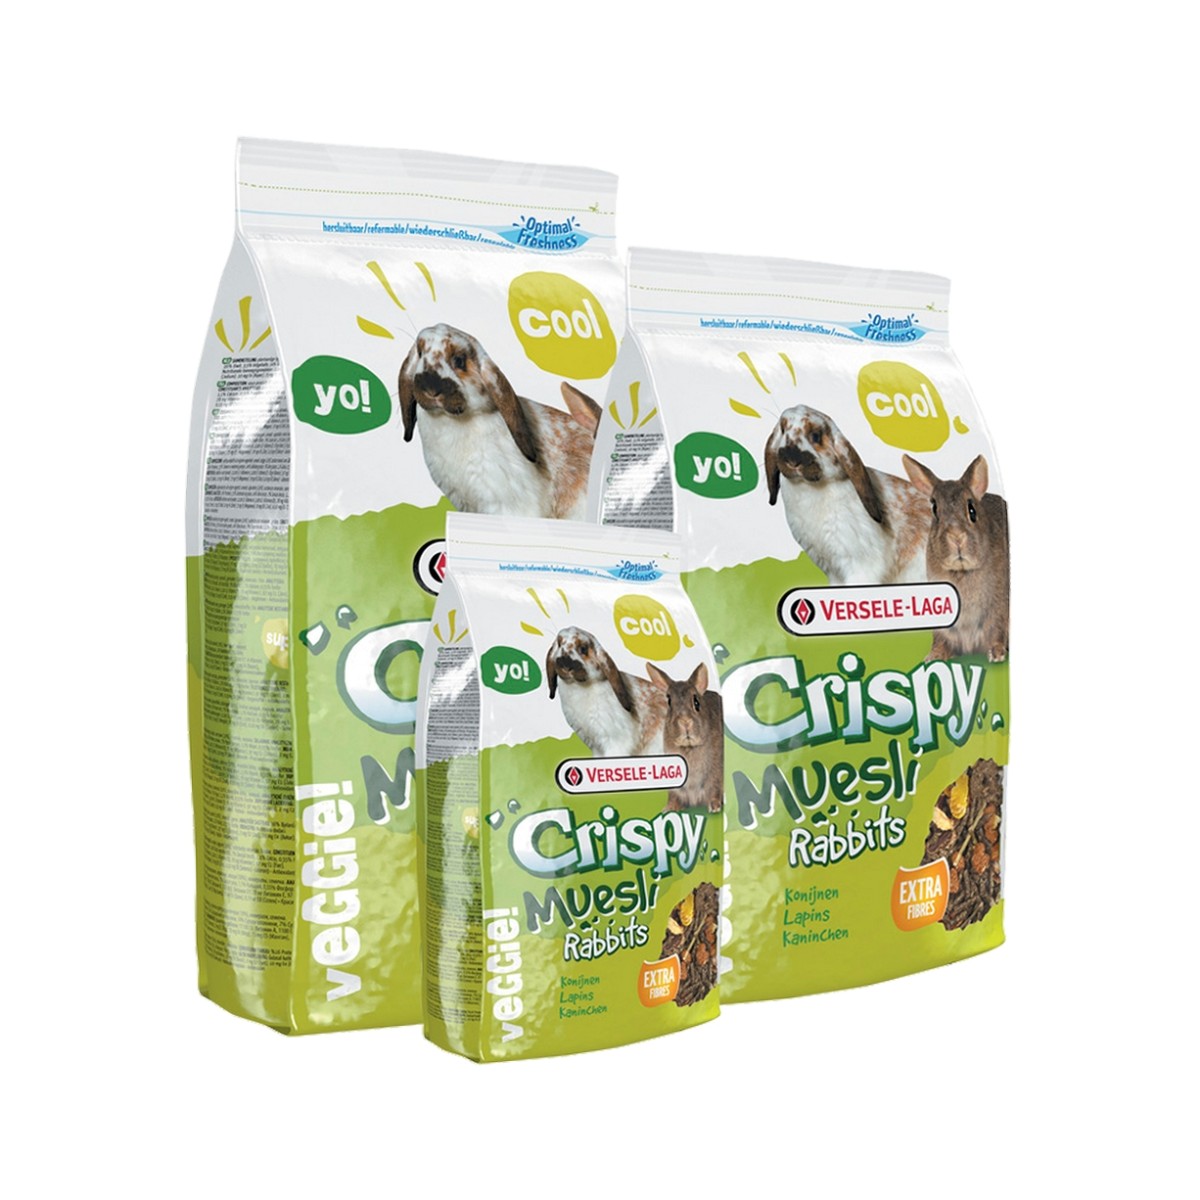 Crispy Muesli - Rabbits 1kg - Mélange de qualité, riche en fibres